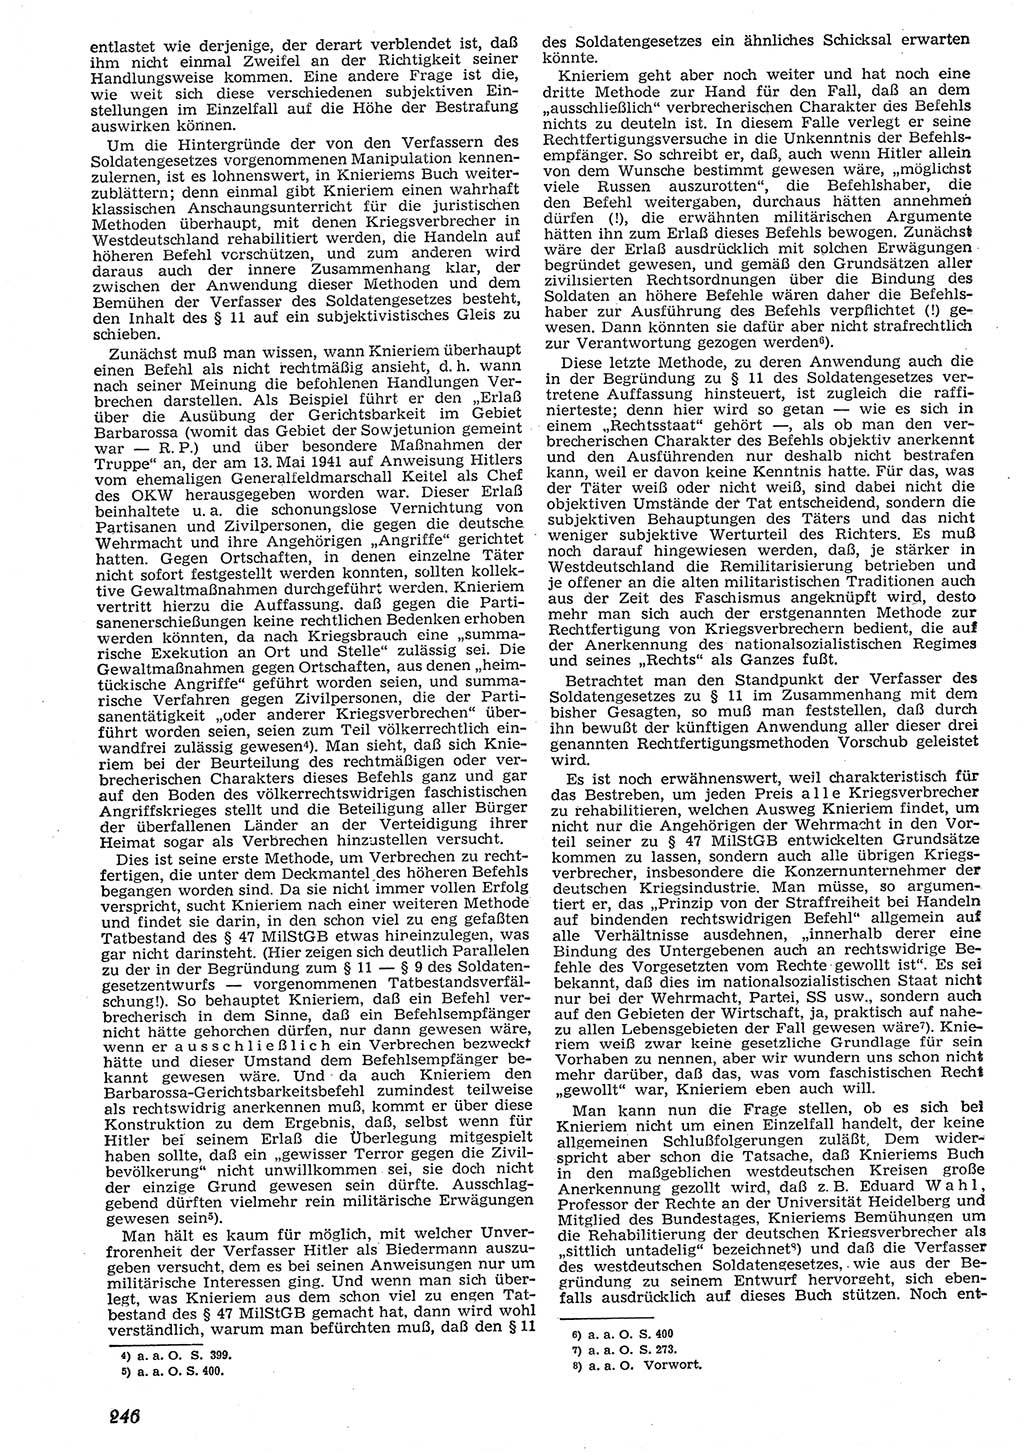 Neue Justiz (NJ), Zeitschrift für Recht und Rechtswissenschaft [Deutsche Demokratische Republik (DDR)], 10. Jahrgang 1956, Seite 246 (NJ DDR 1956, S. 246)